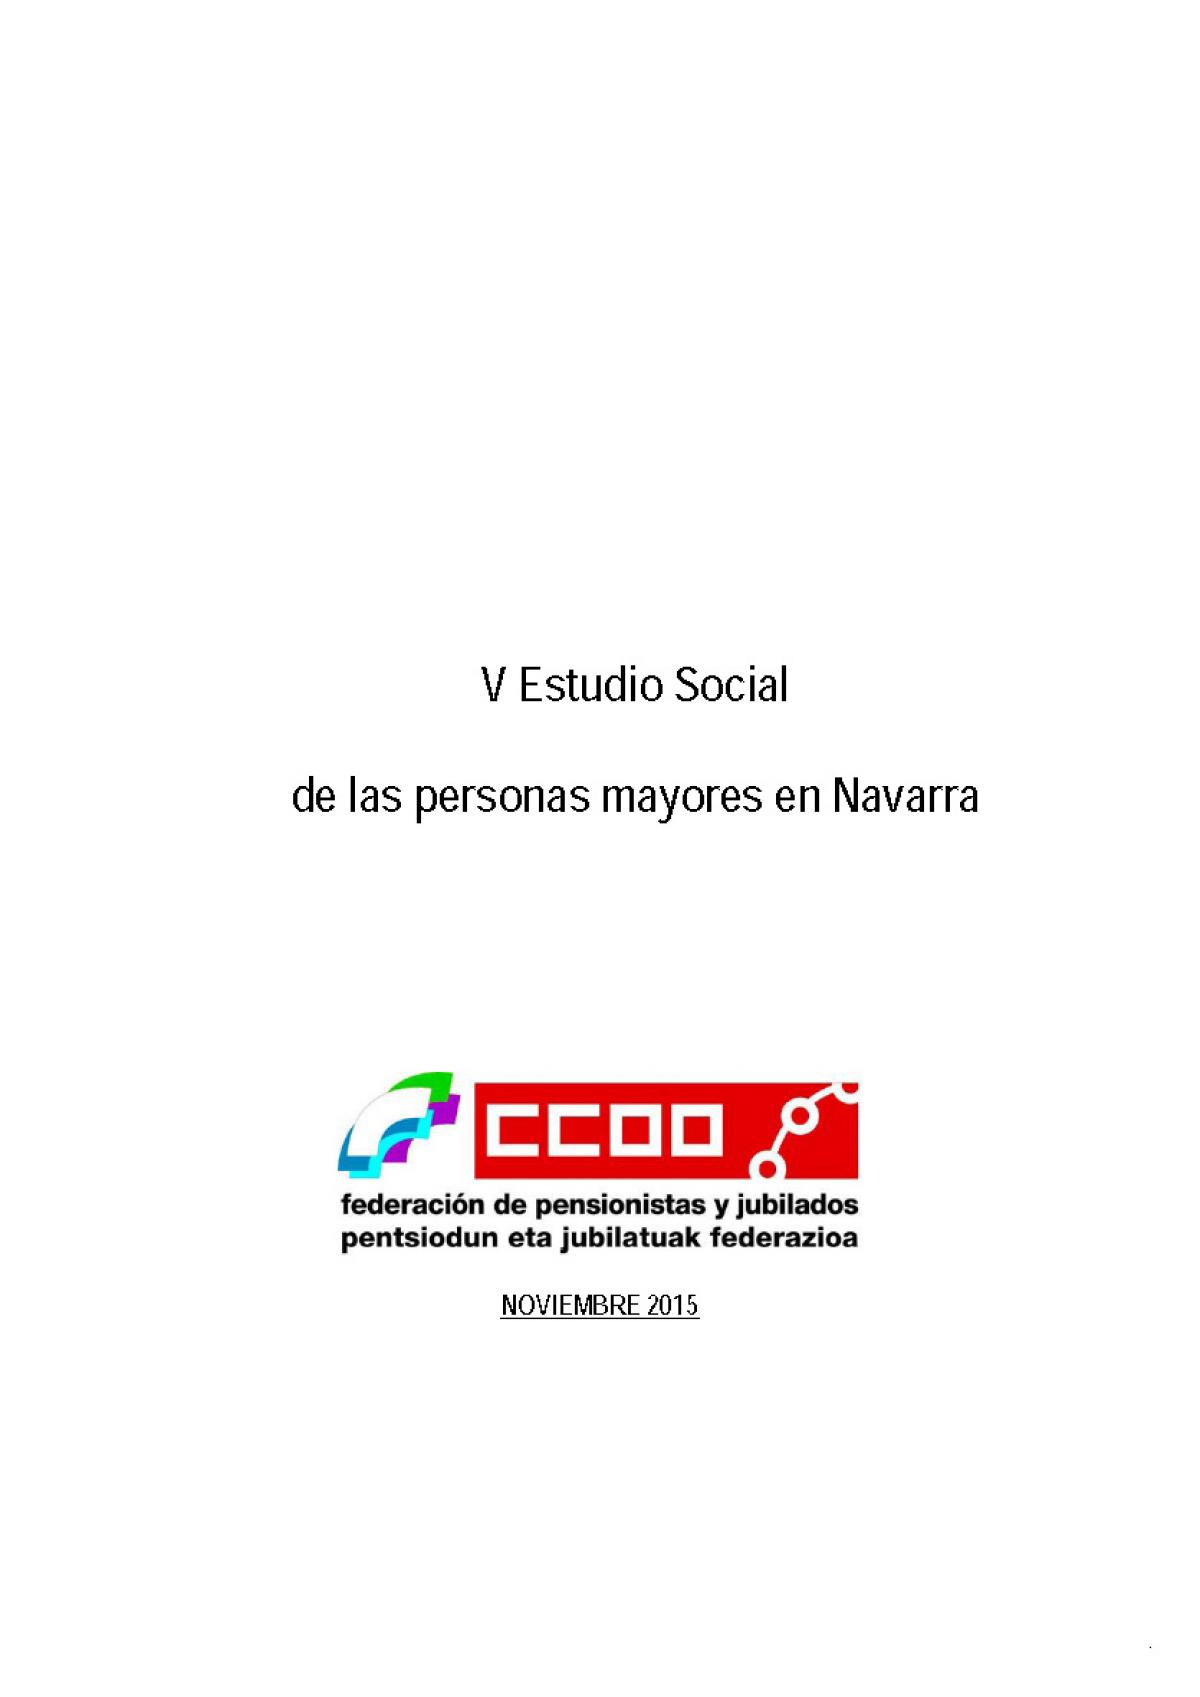 V Estudio Social de las personas mayores en Navarra